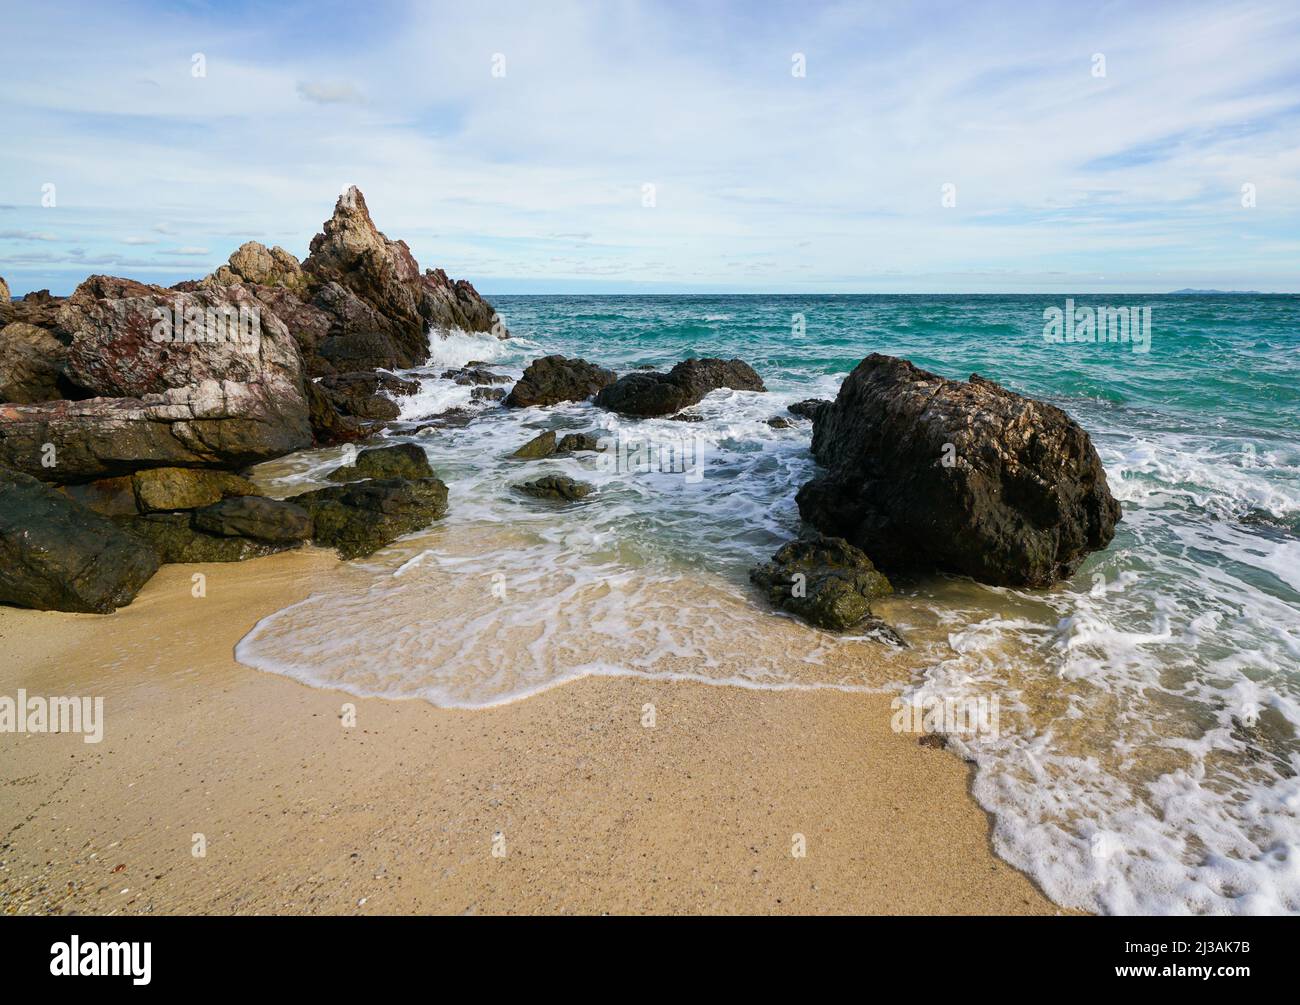 Playa de arena entre rocas, Koh lan isla tailandia Foto de stock